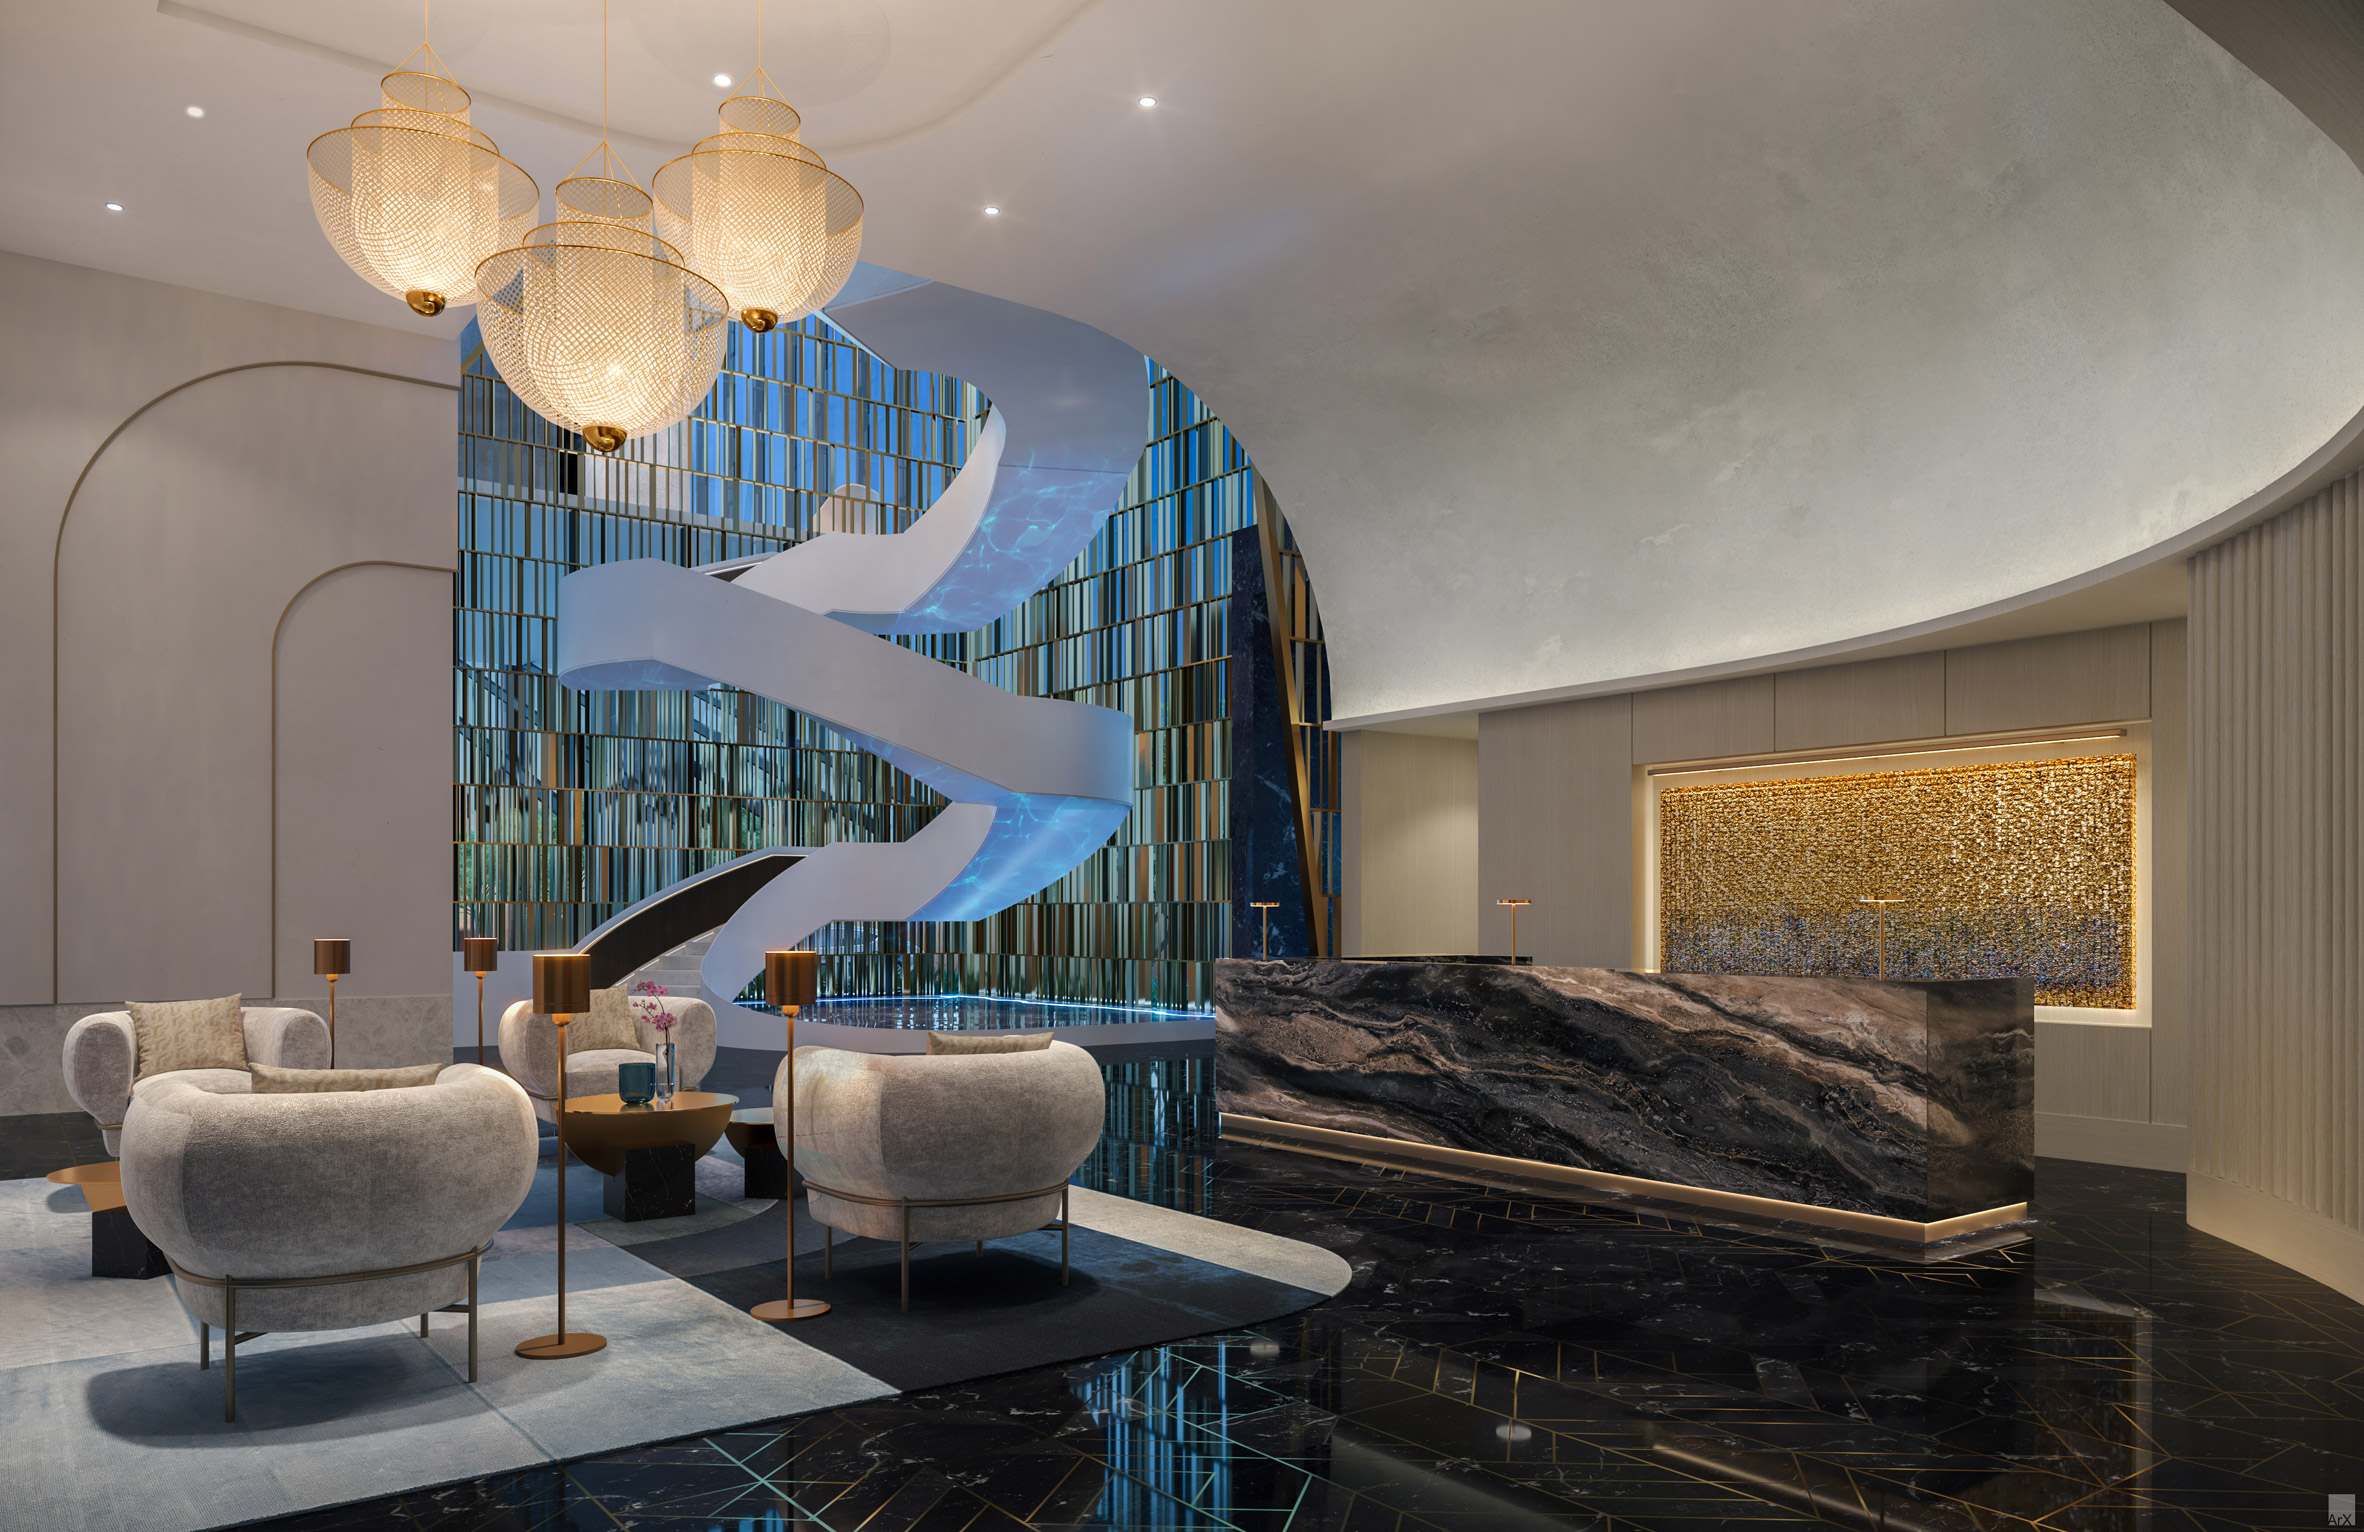 Lobby for the Waldorf Astoria Miami